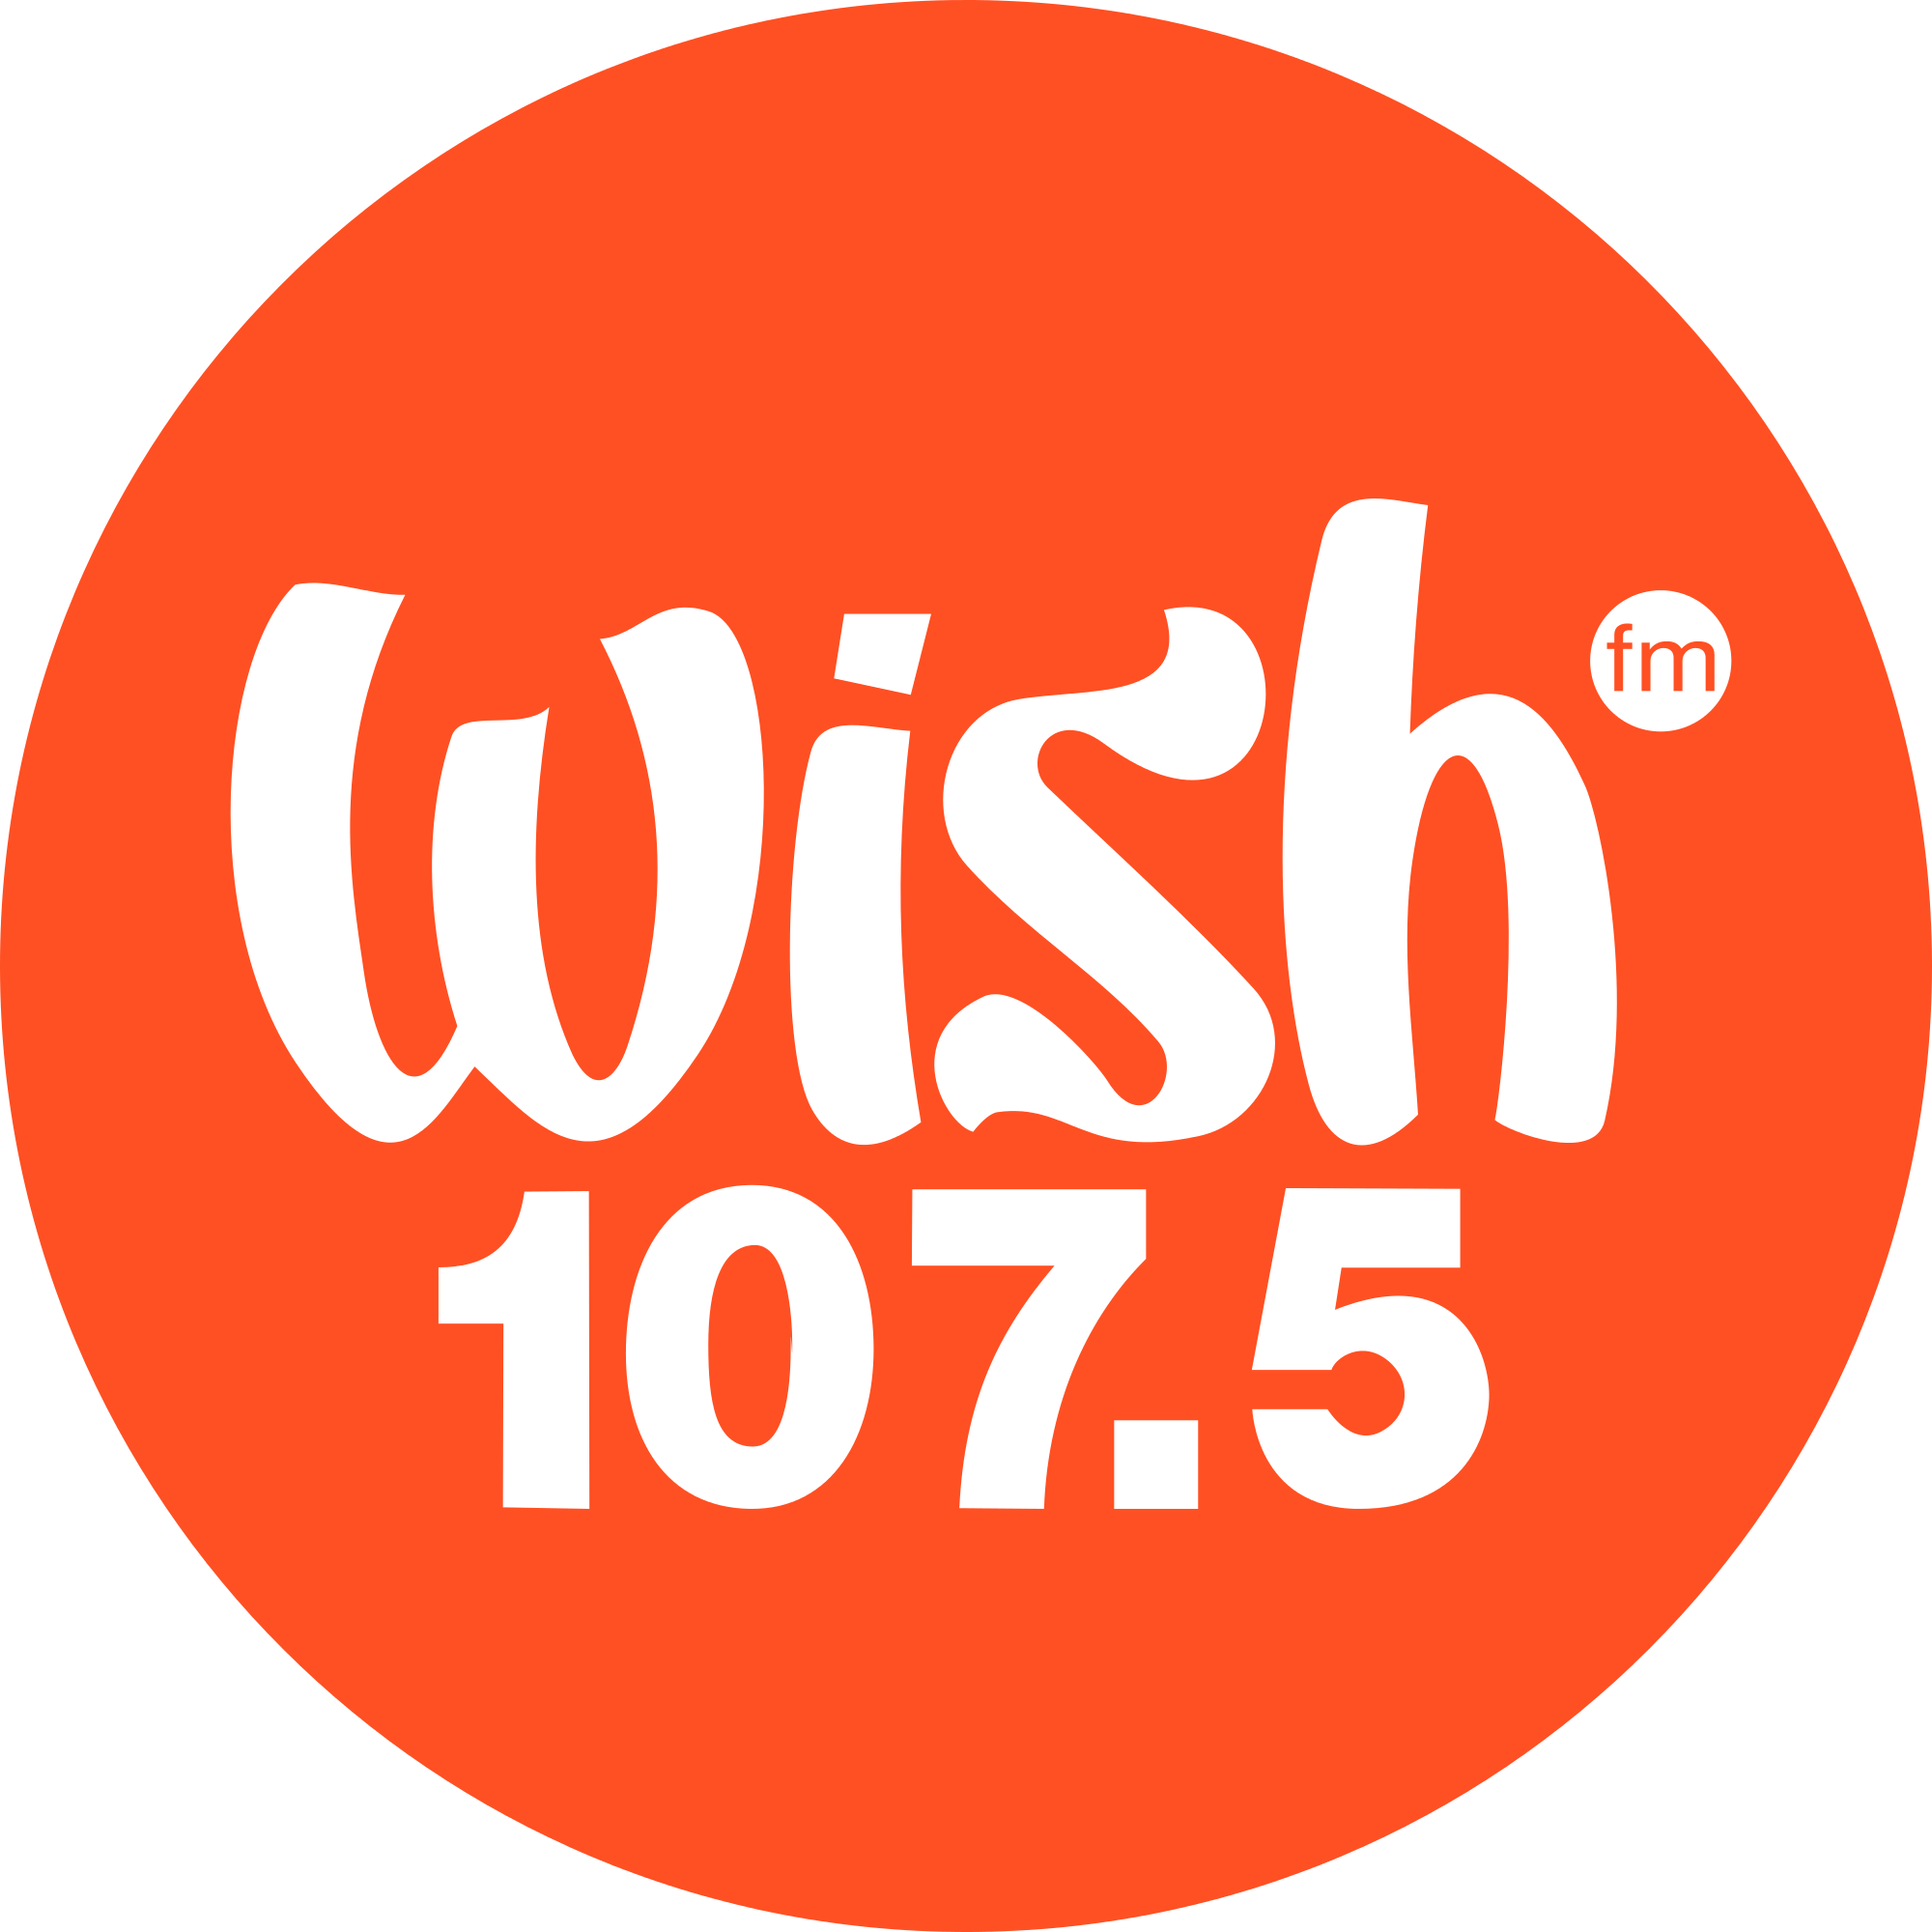 Wish Logo - Wish 107.5 (2015).svg